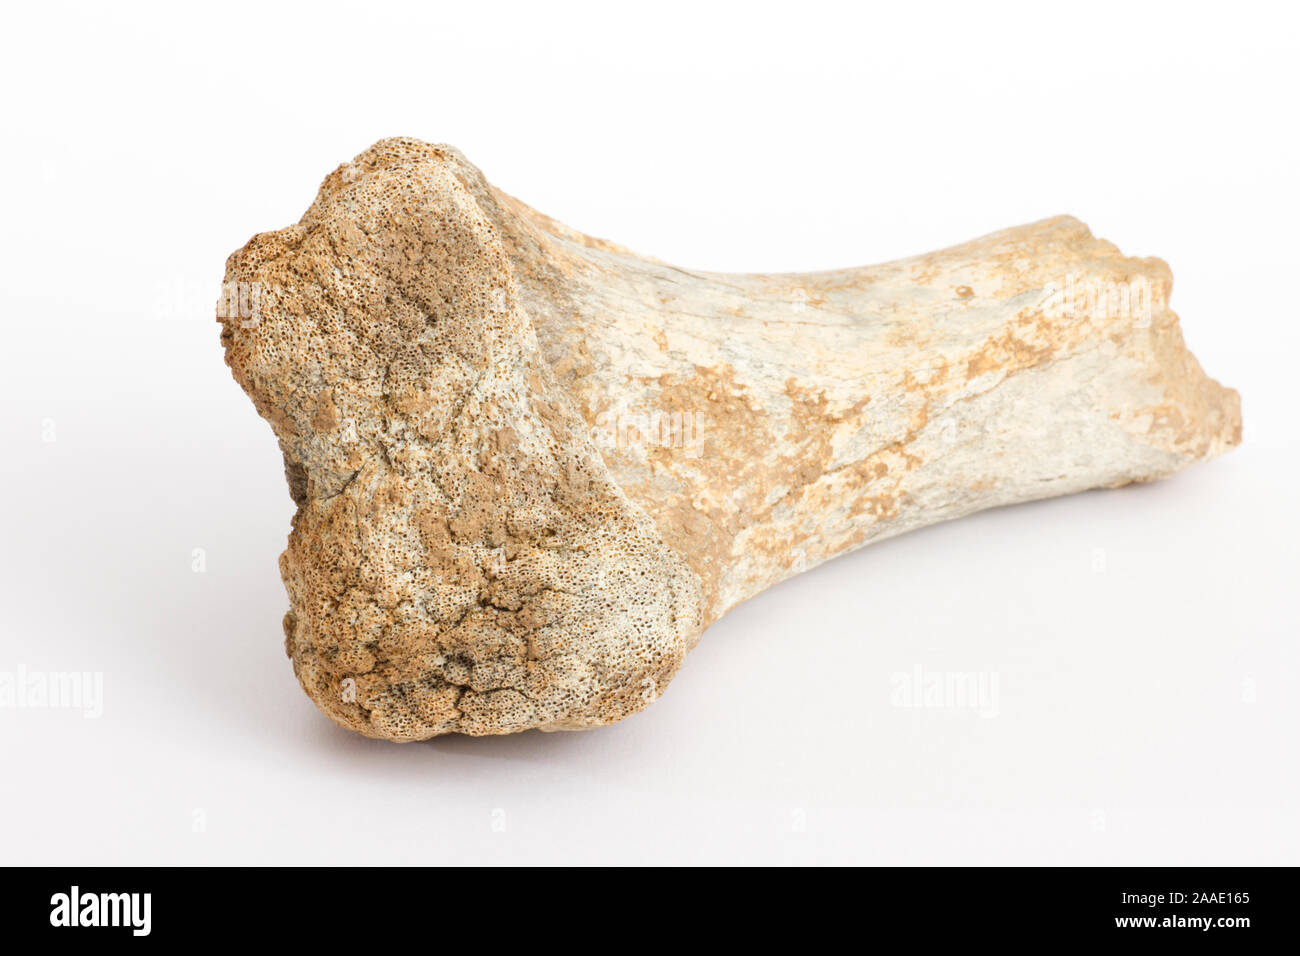 Knochen eines Höhlenbären, Ursus spelaeus,Fundort: Schwäbische Alb Foto Stock